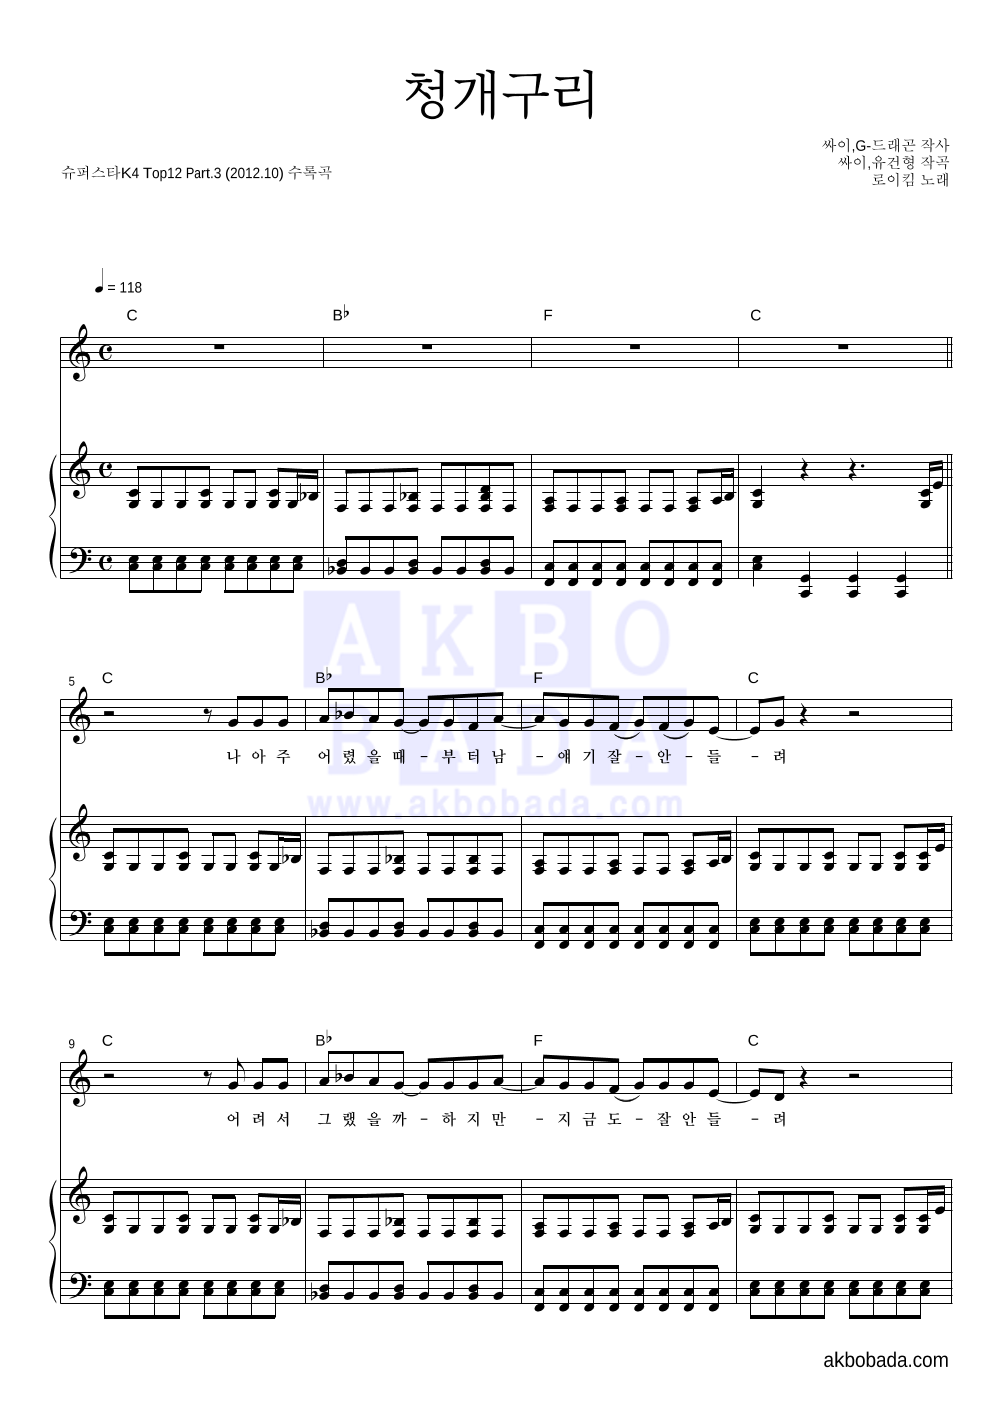 로이킴 - 청개구리 피아노 3단 악보 